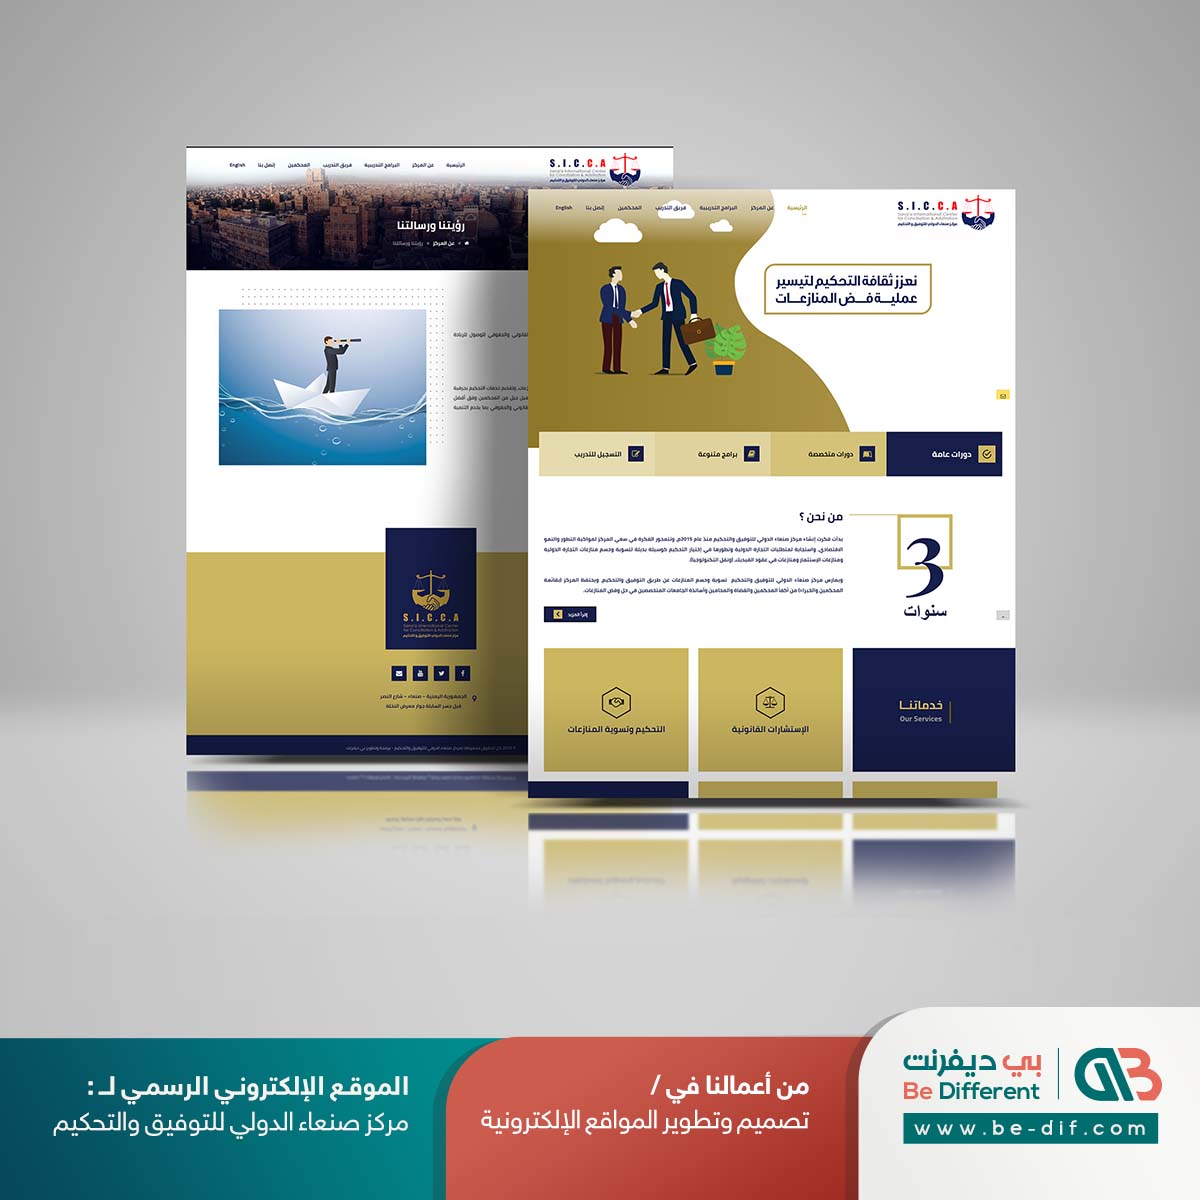 صميم موقع الكتروني مركز صنعاء الدولي - شركة بي ديفرنت تصميم مواقع انترنت مركز تحكيم دولي الرياض ابوظبي